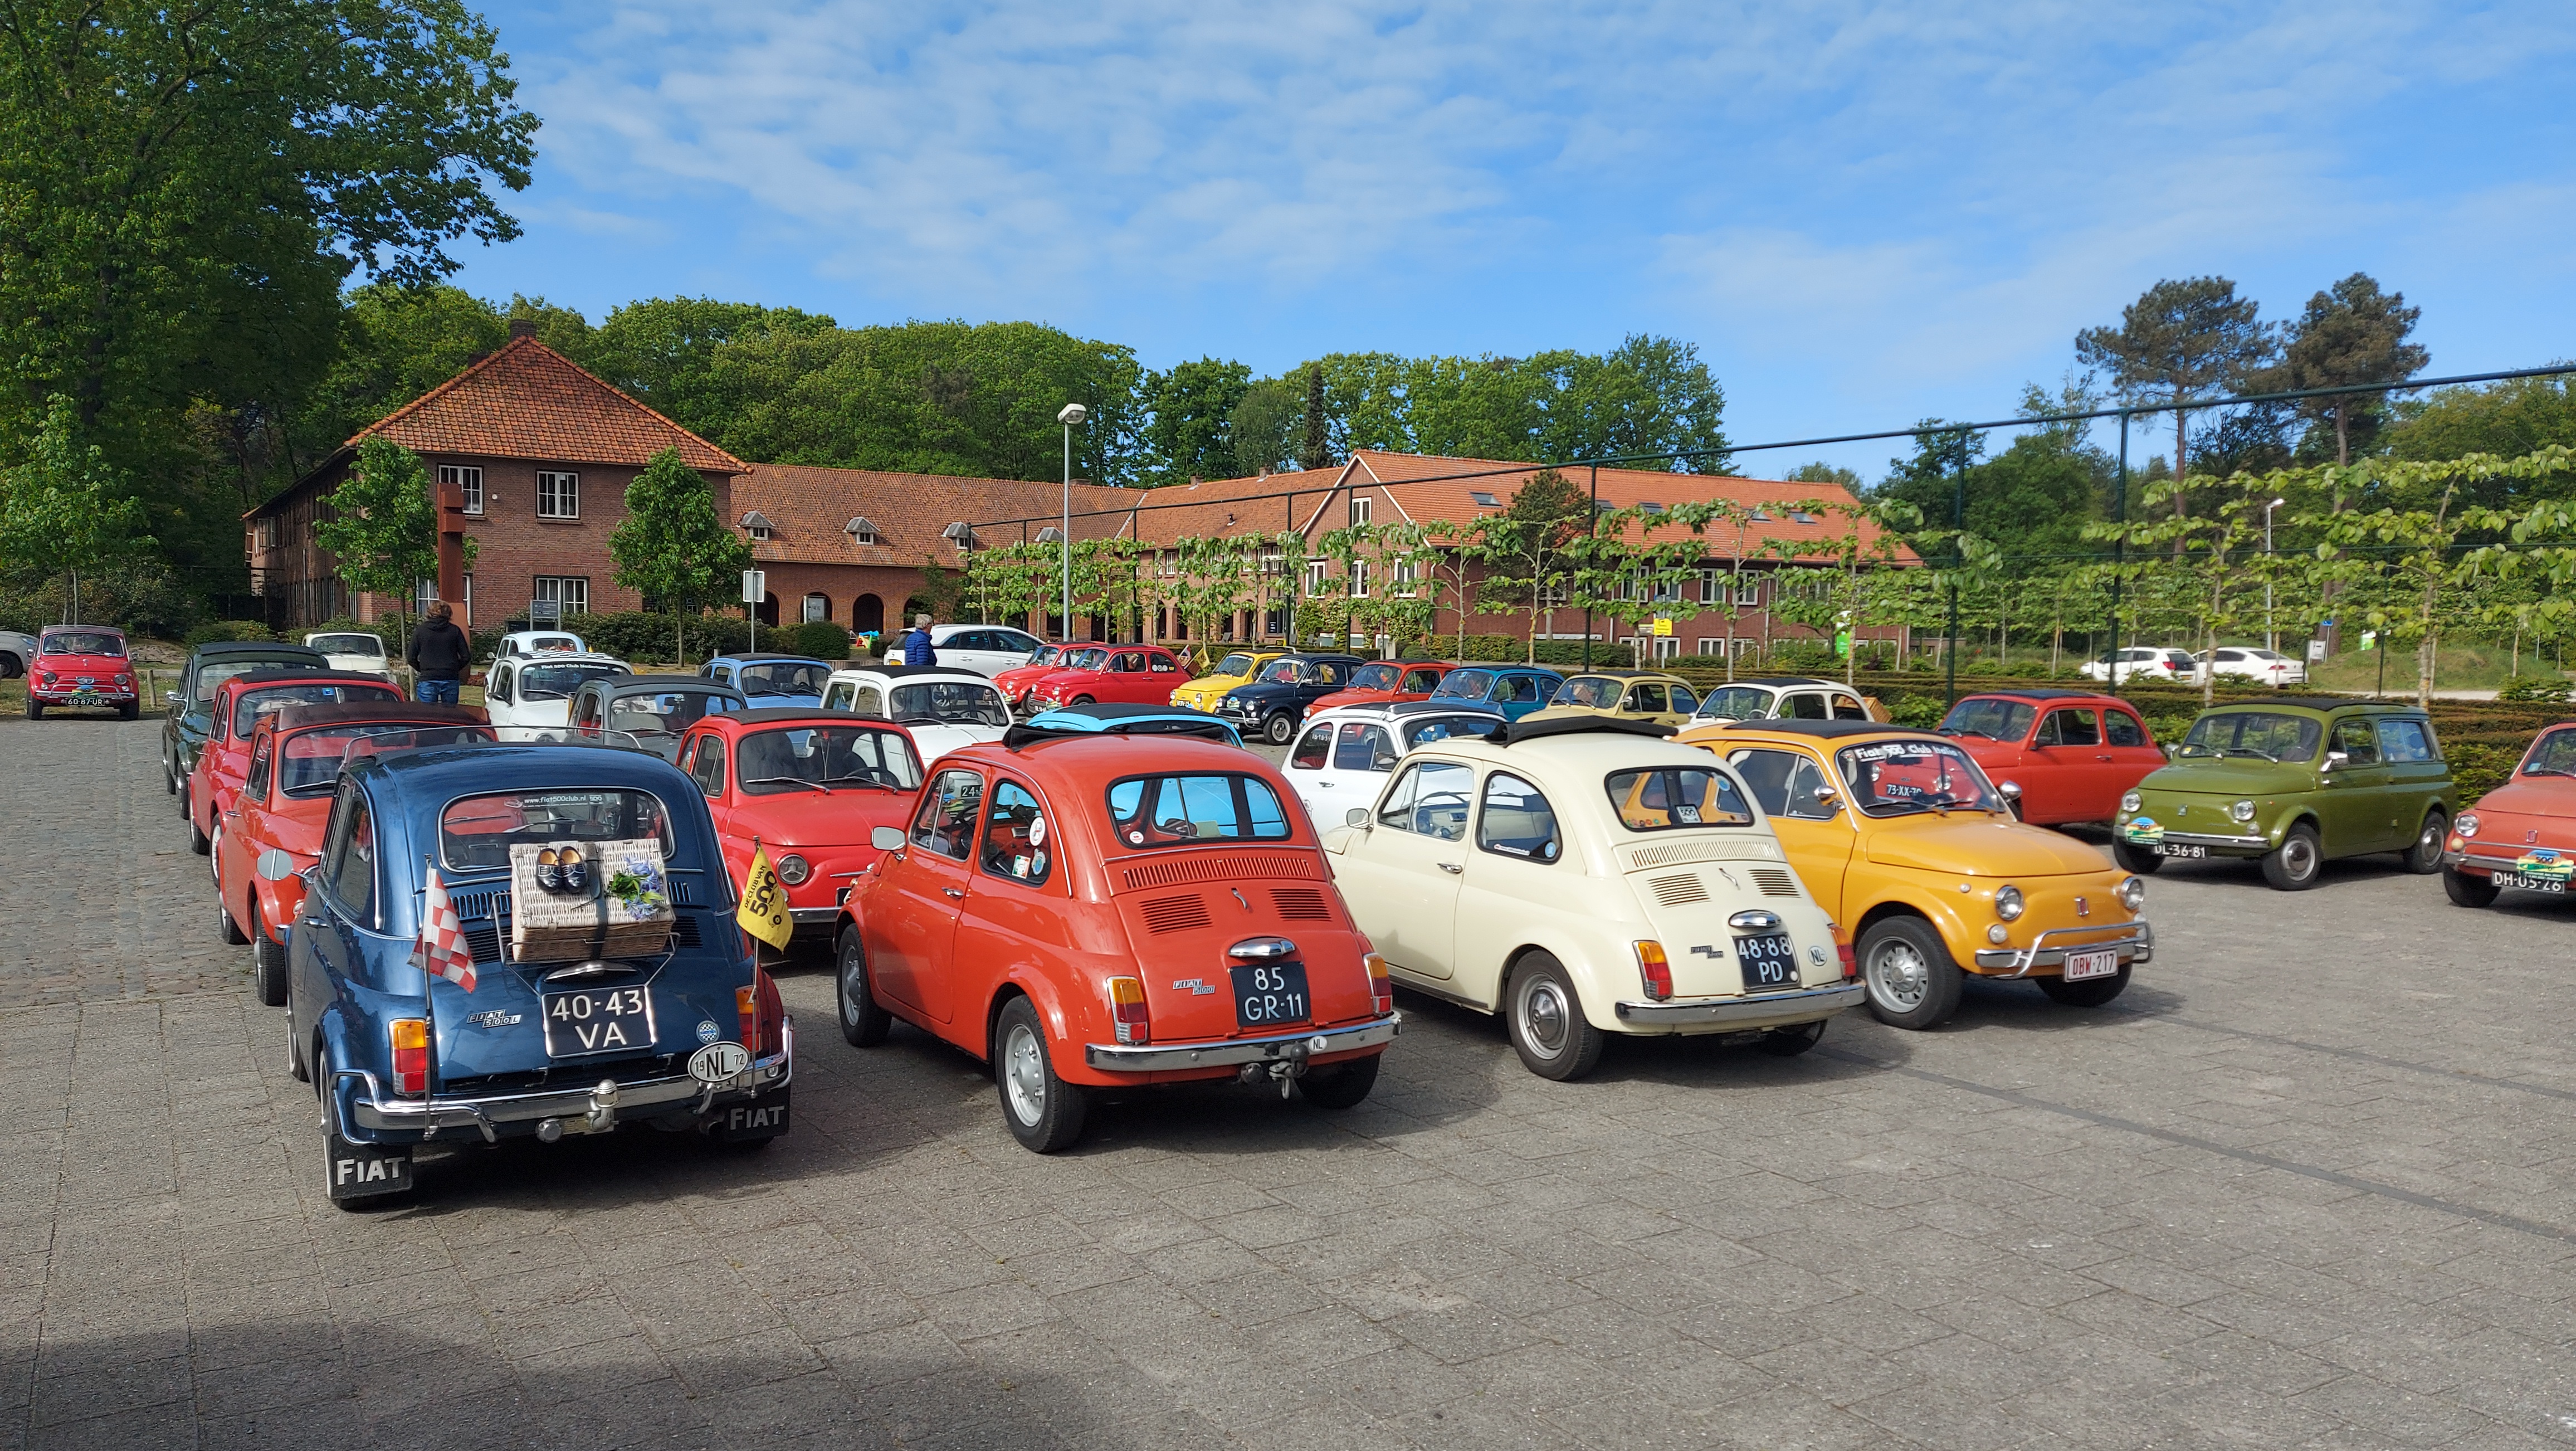 Parkeerplaats vol met Fiat 500's met op de voorgrond een donkerblauwe, een rode, een witte en een okergele